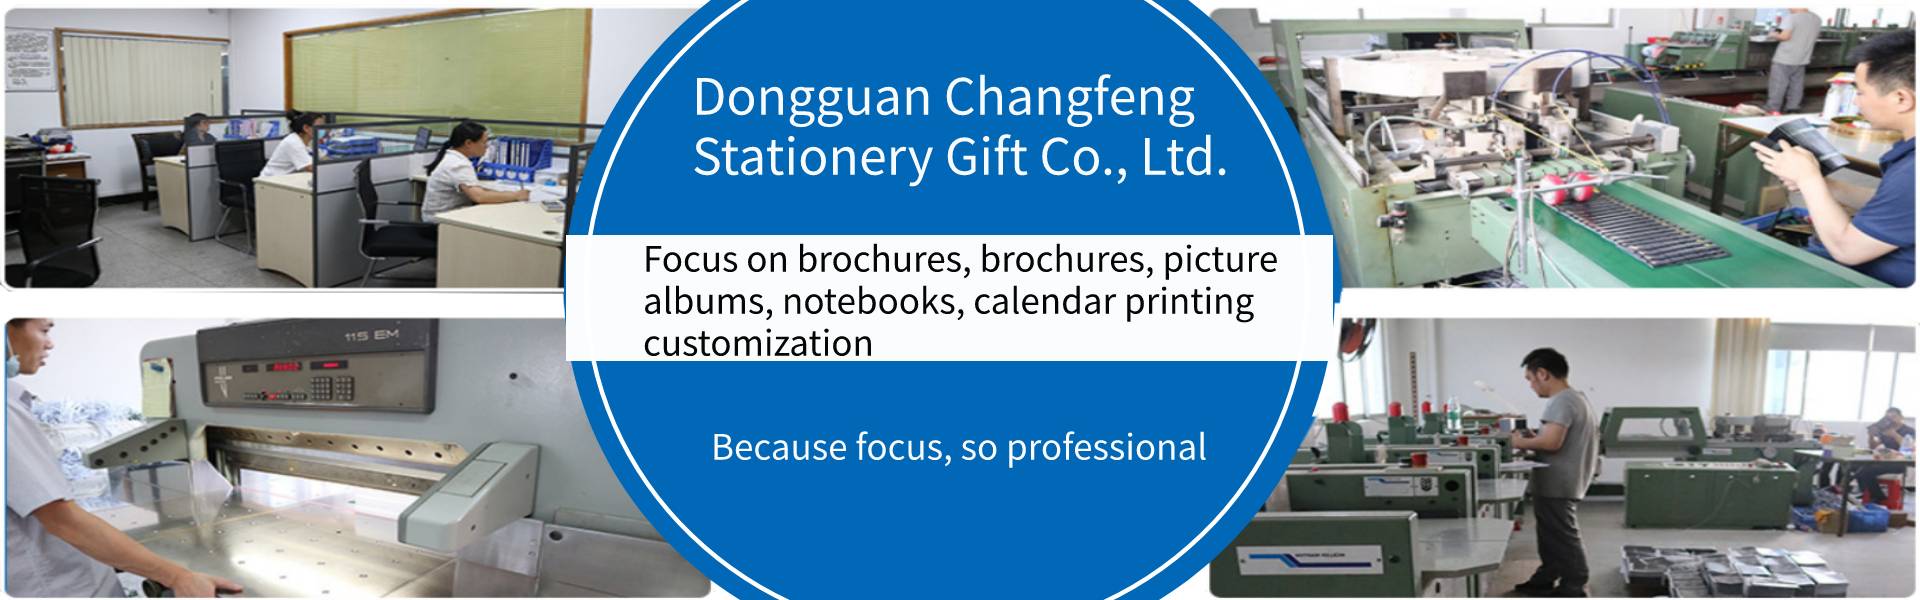 instrukcja obsługi, album ze zdjęciami, notatnik,Dongguan Changfeng Stationery Gift Co., Ltd.